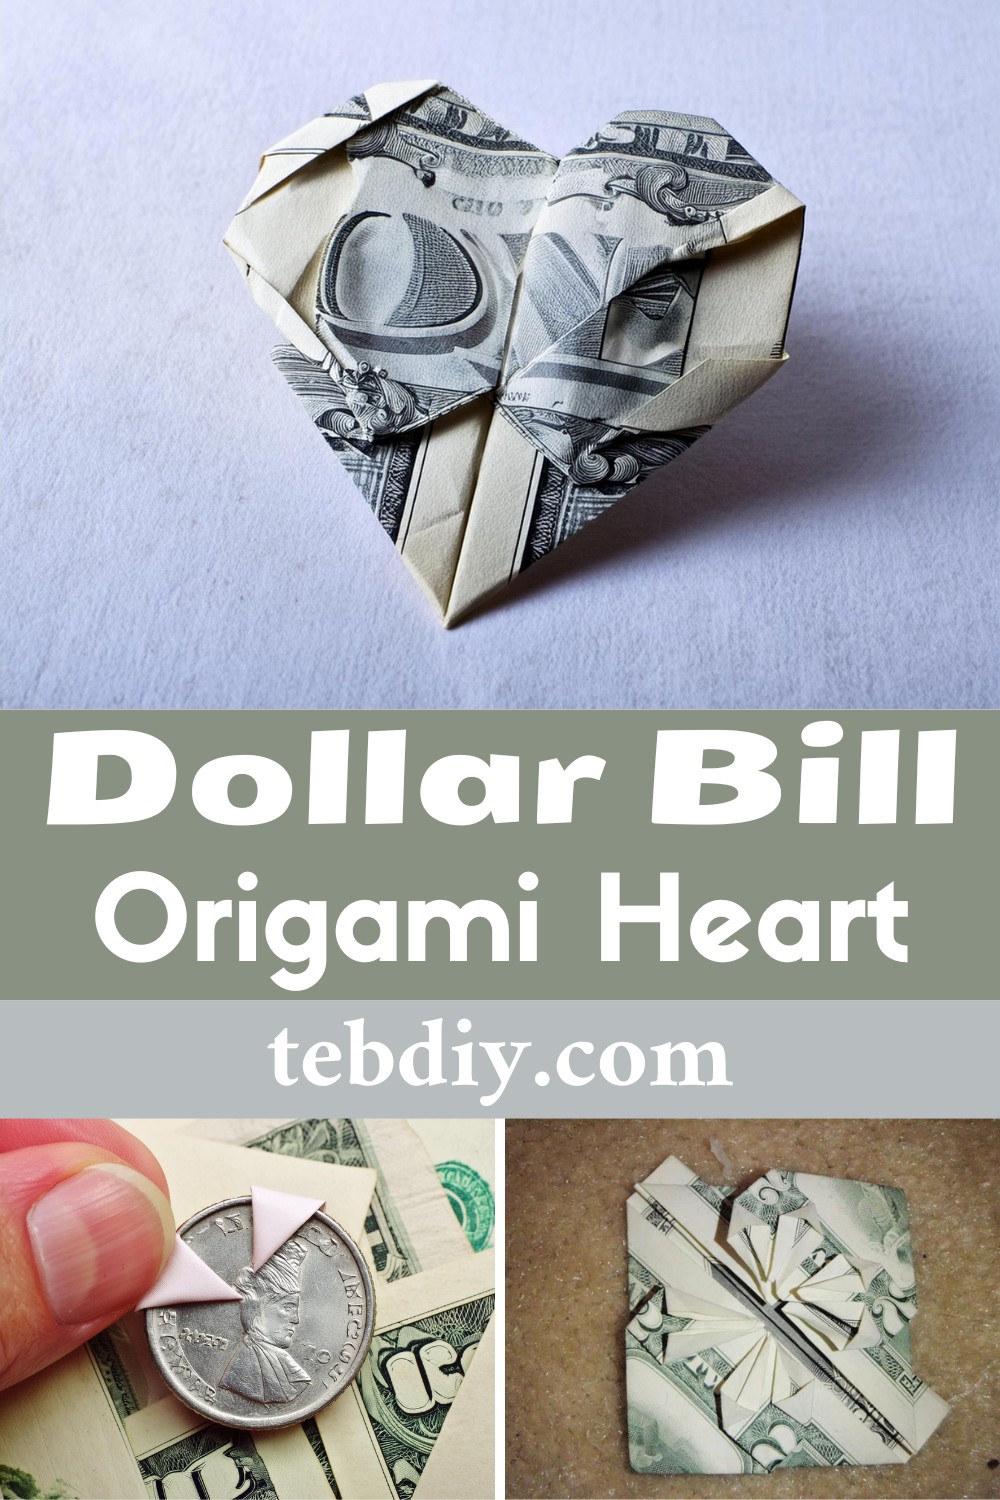 Dollar Bill Origami Heart Plan